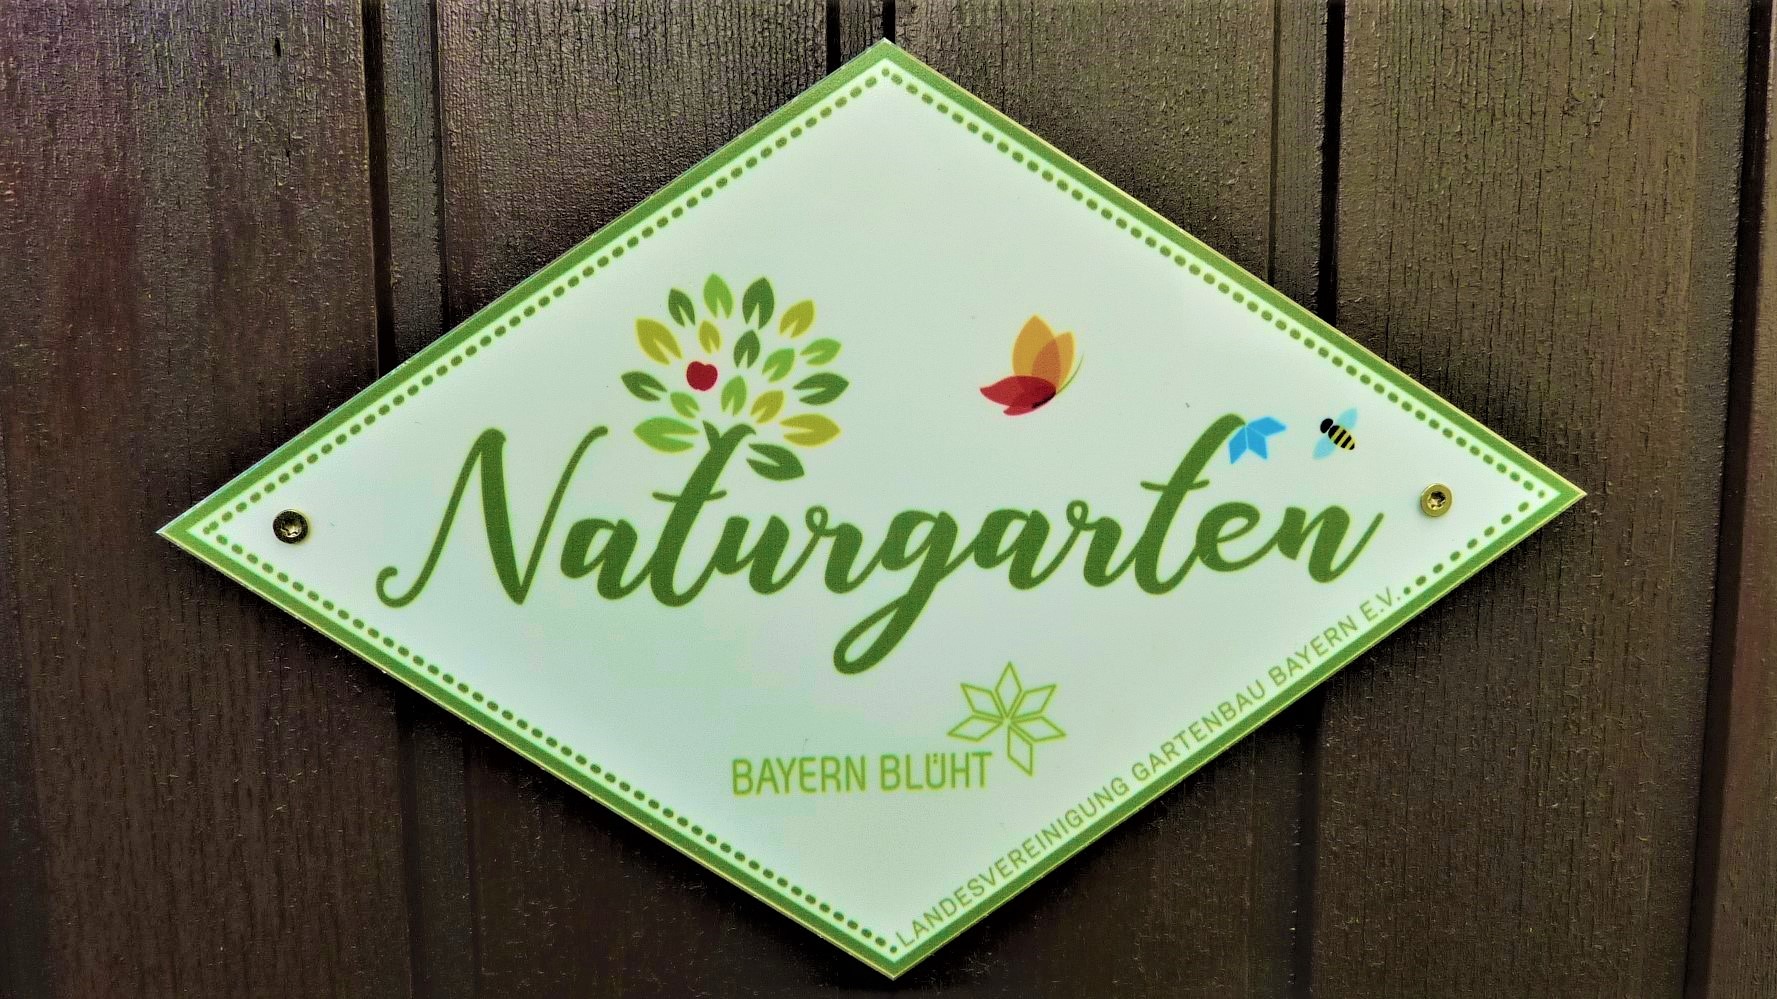 Werbung für mehr Natur in heimischen Gärten / Naturgarten-Zertifizierung